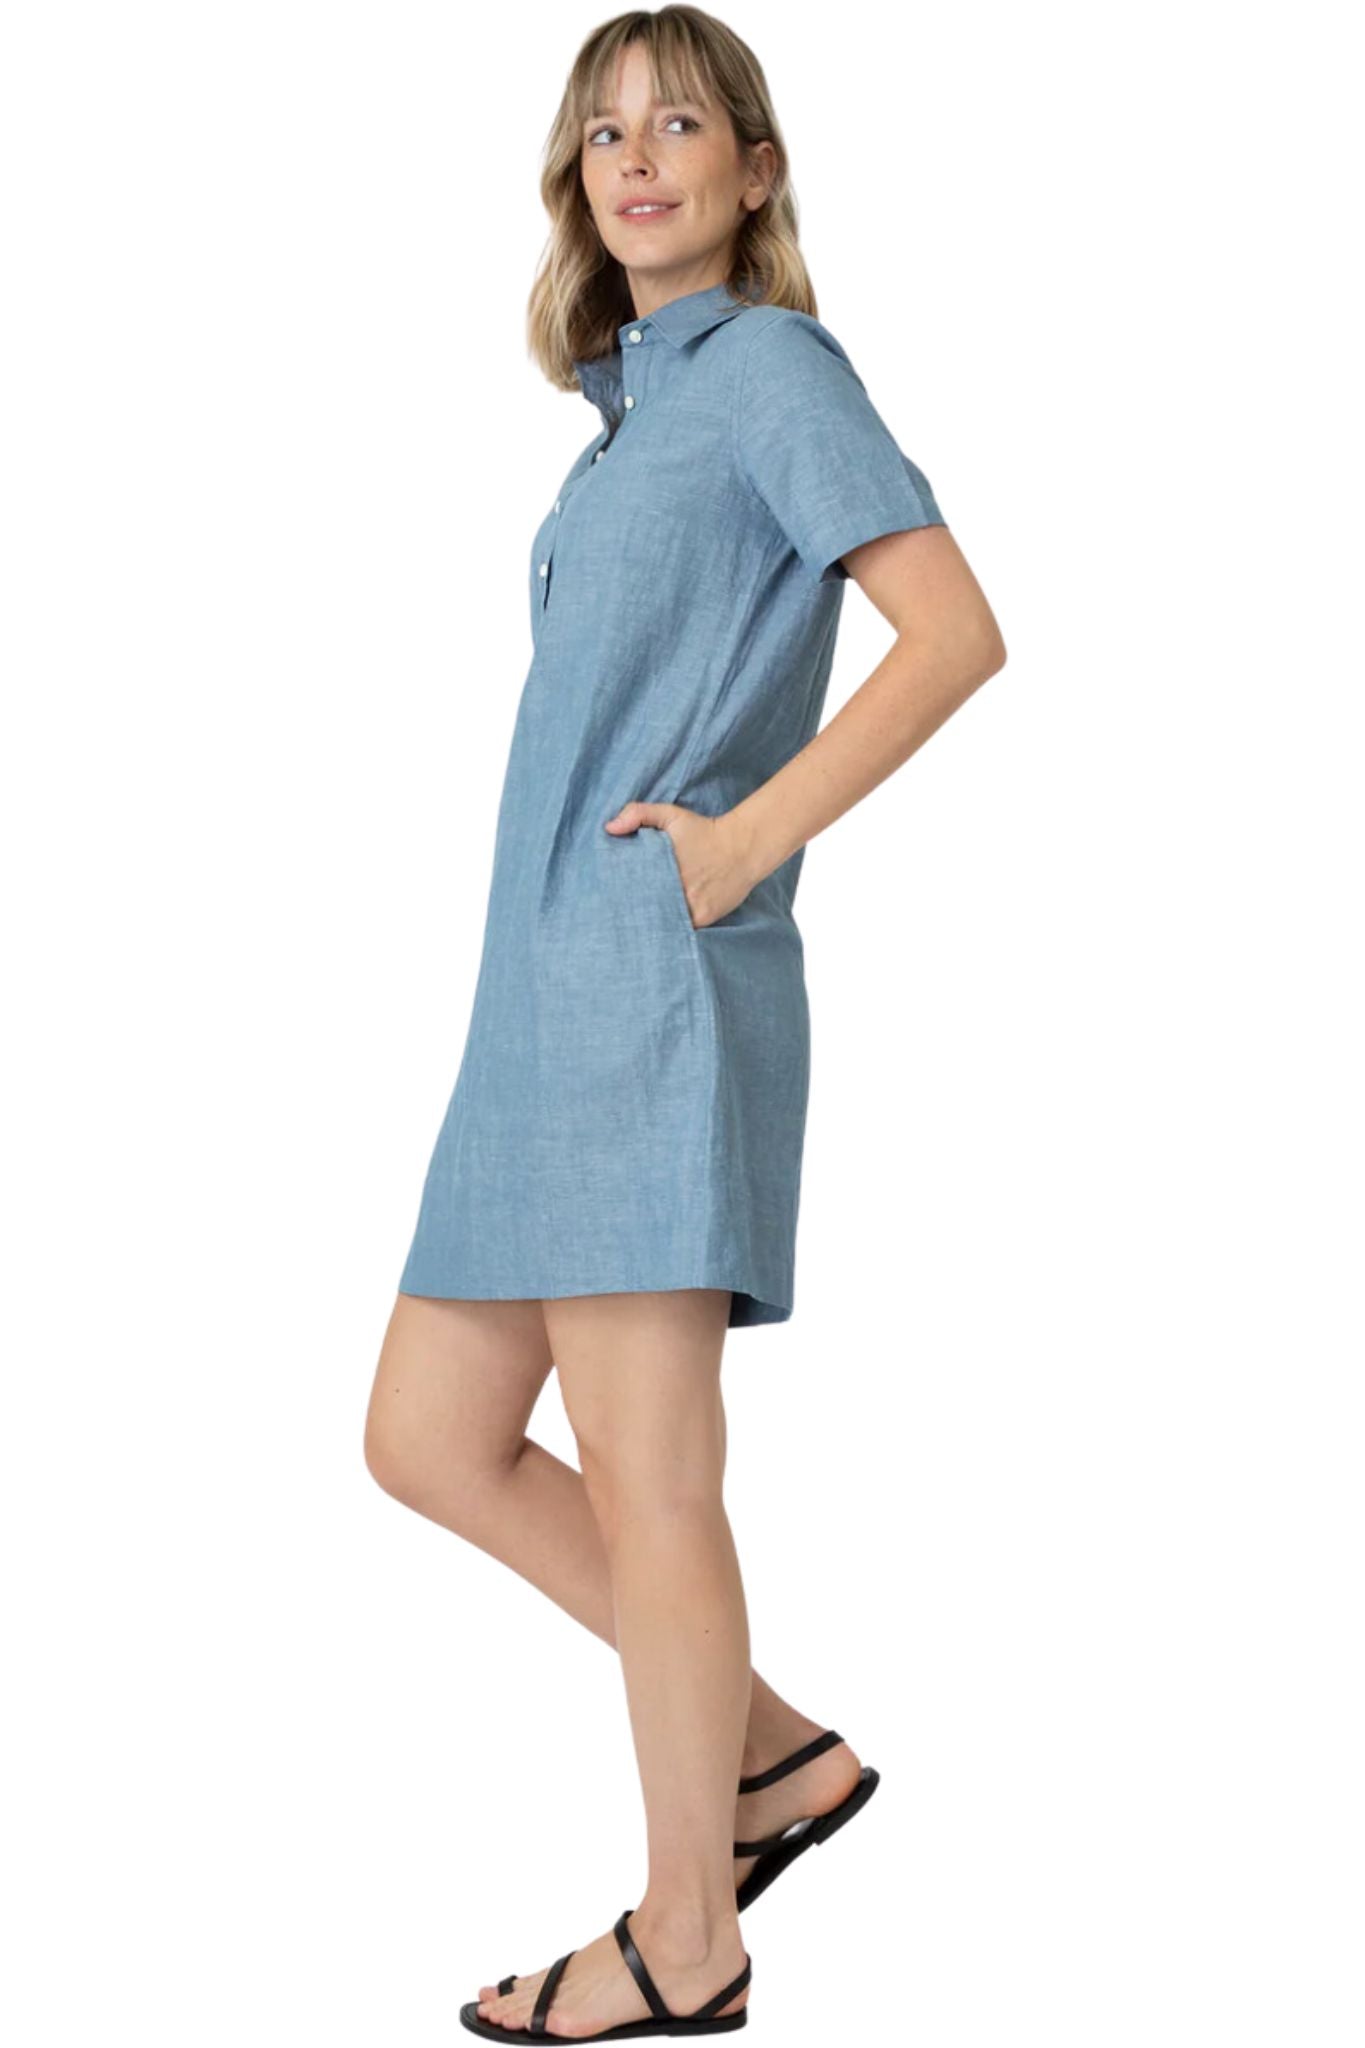 Ann Mashburn Short Sleeve Popover Dress